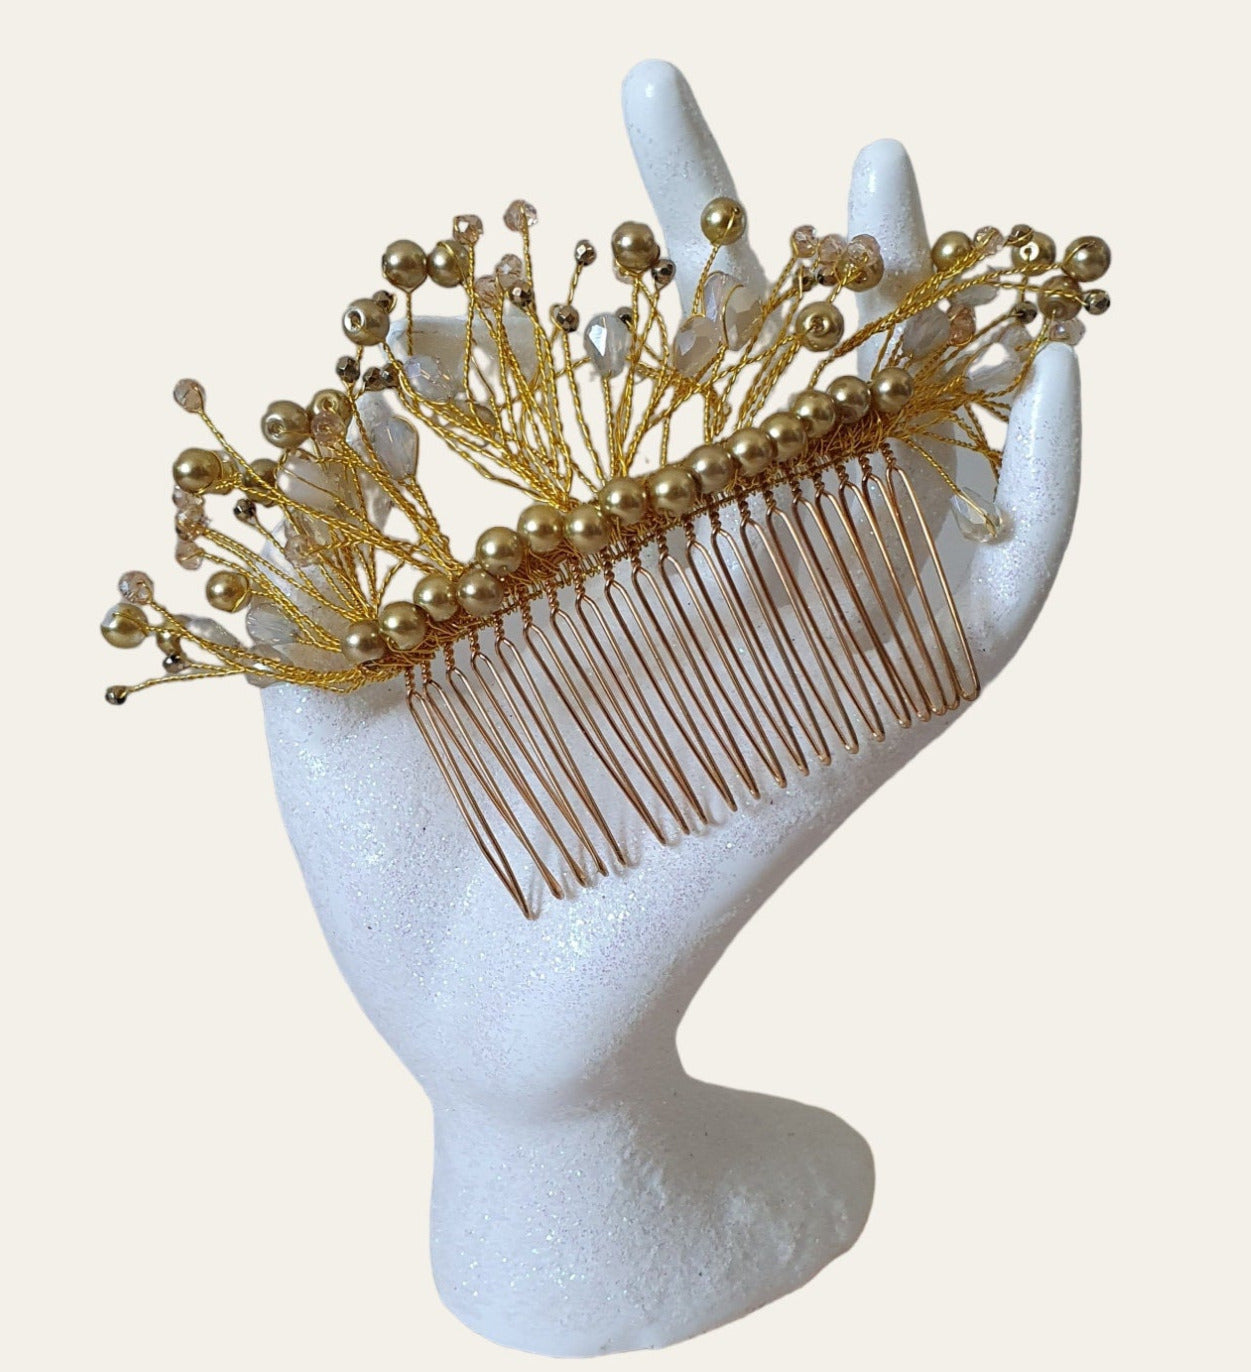 Peineta de novia hecha a mano con perlas y piedras caídas - Elegante accesorio para el cabello para bodas, bodas y fiestas, peineta de metal de color dorado